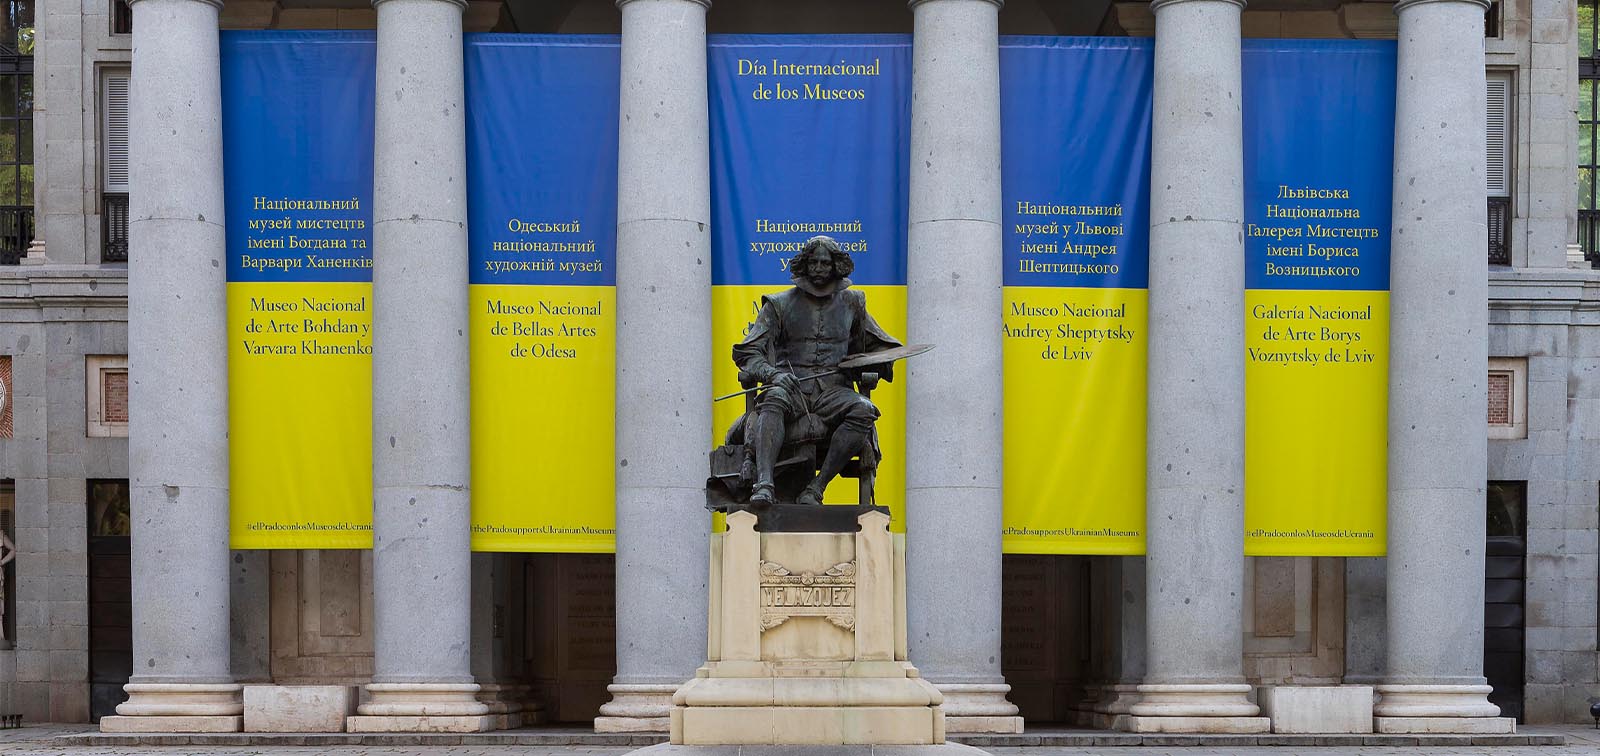 Día Internacional de los Museos 2022 en el Prado